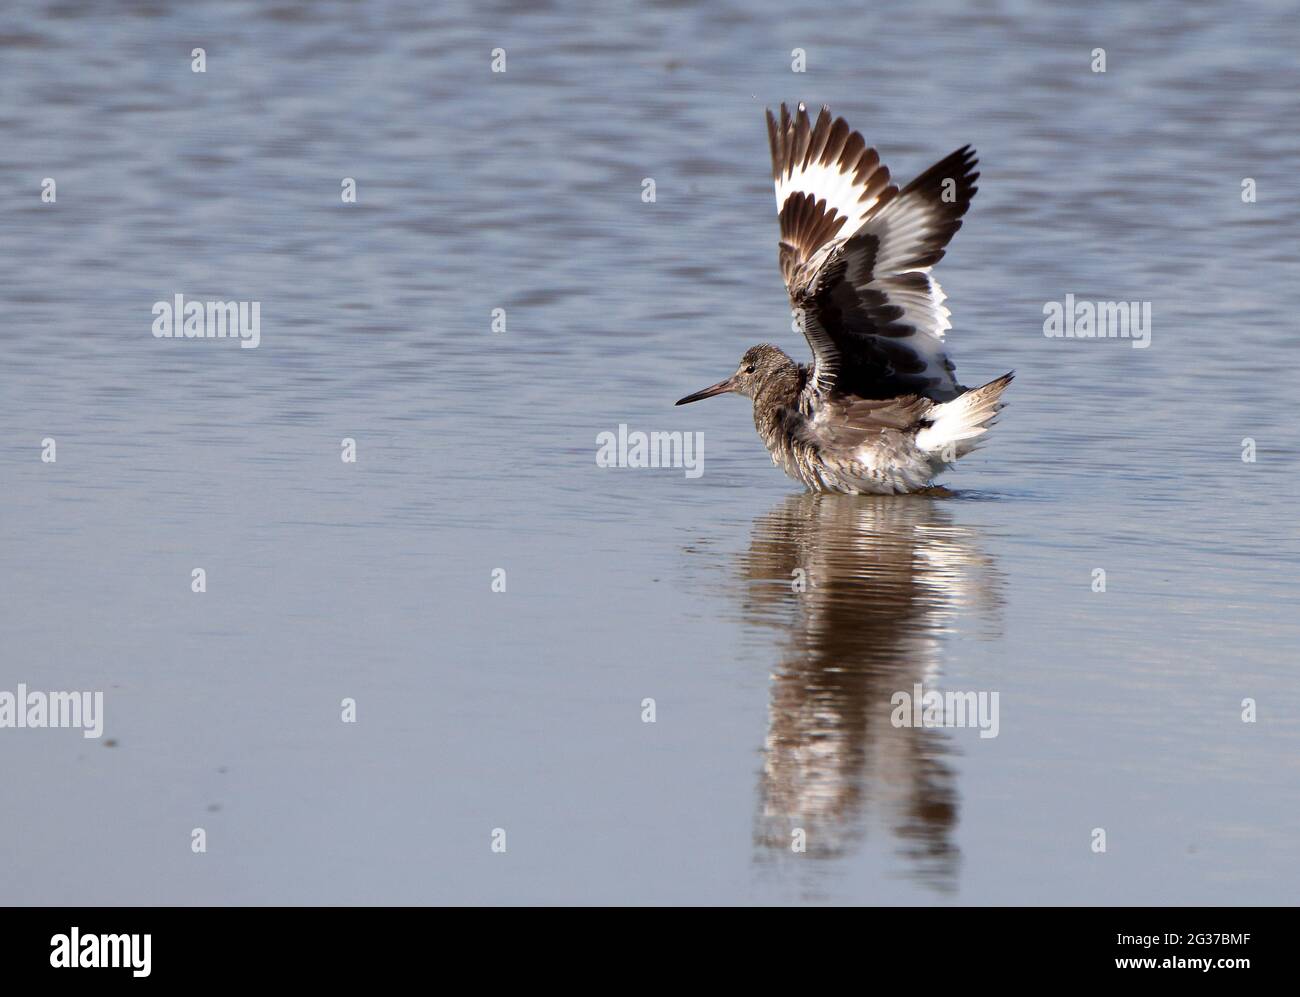 Godwit revolotear sus alas mientras se encuentra en un pantano de agua salada poco profundo Foto de stock